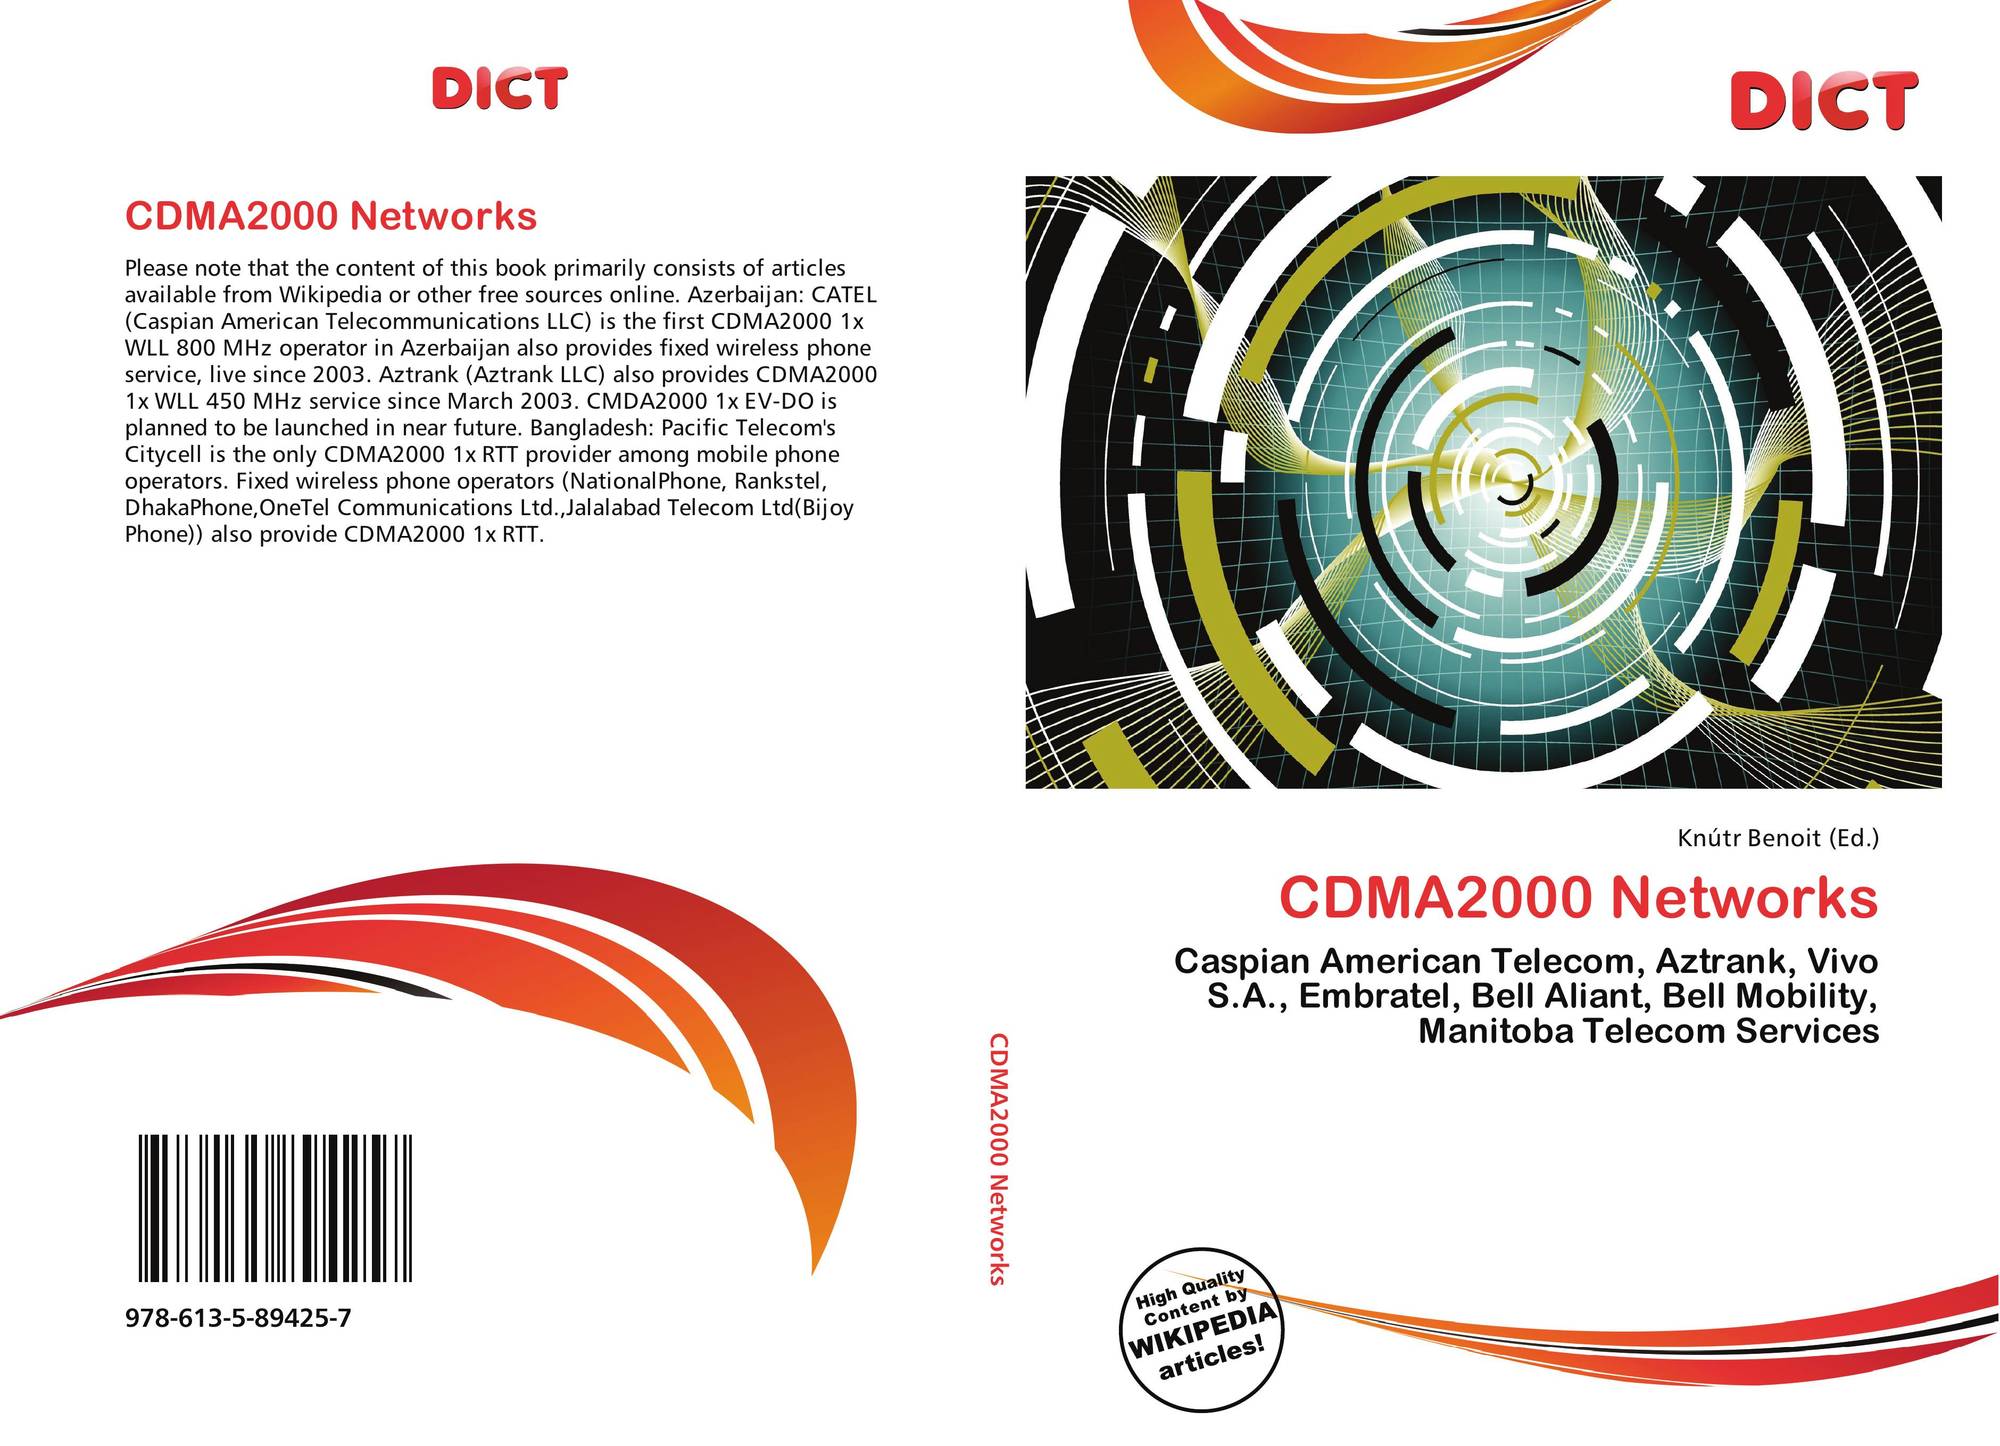 CDMA2000 Logo - CDMA2000 Networks, 978 613 5 89425 6135894250 , 9786135894257